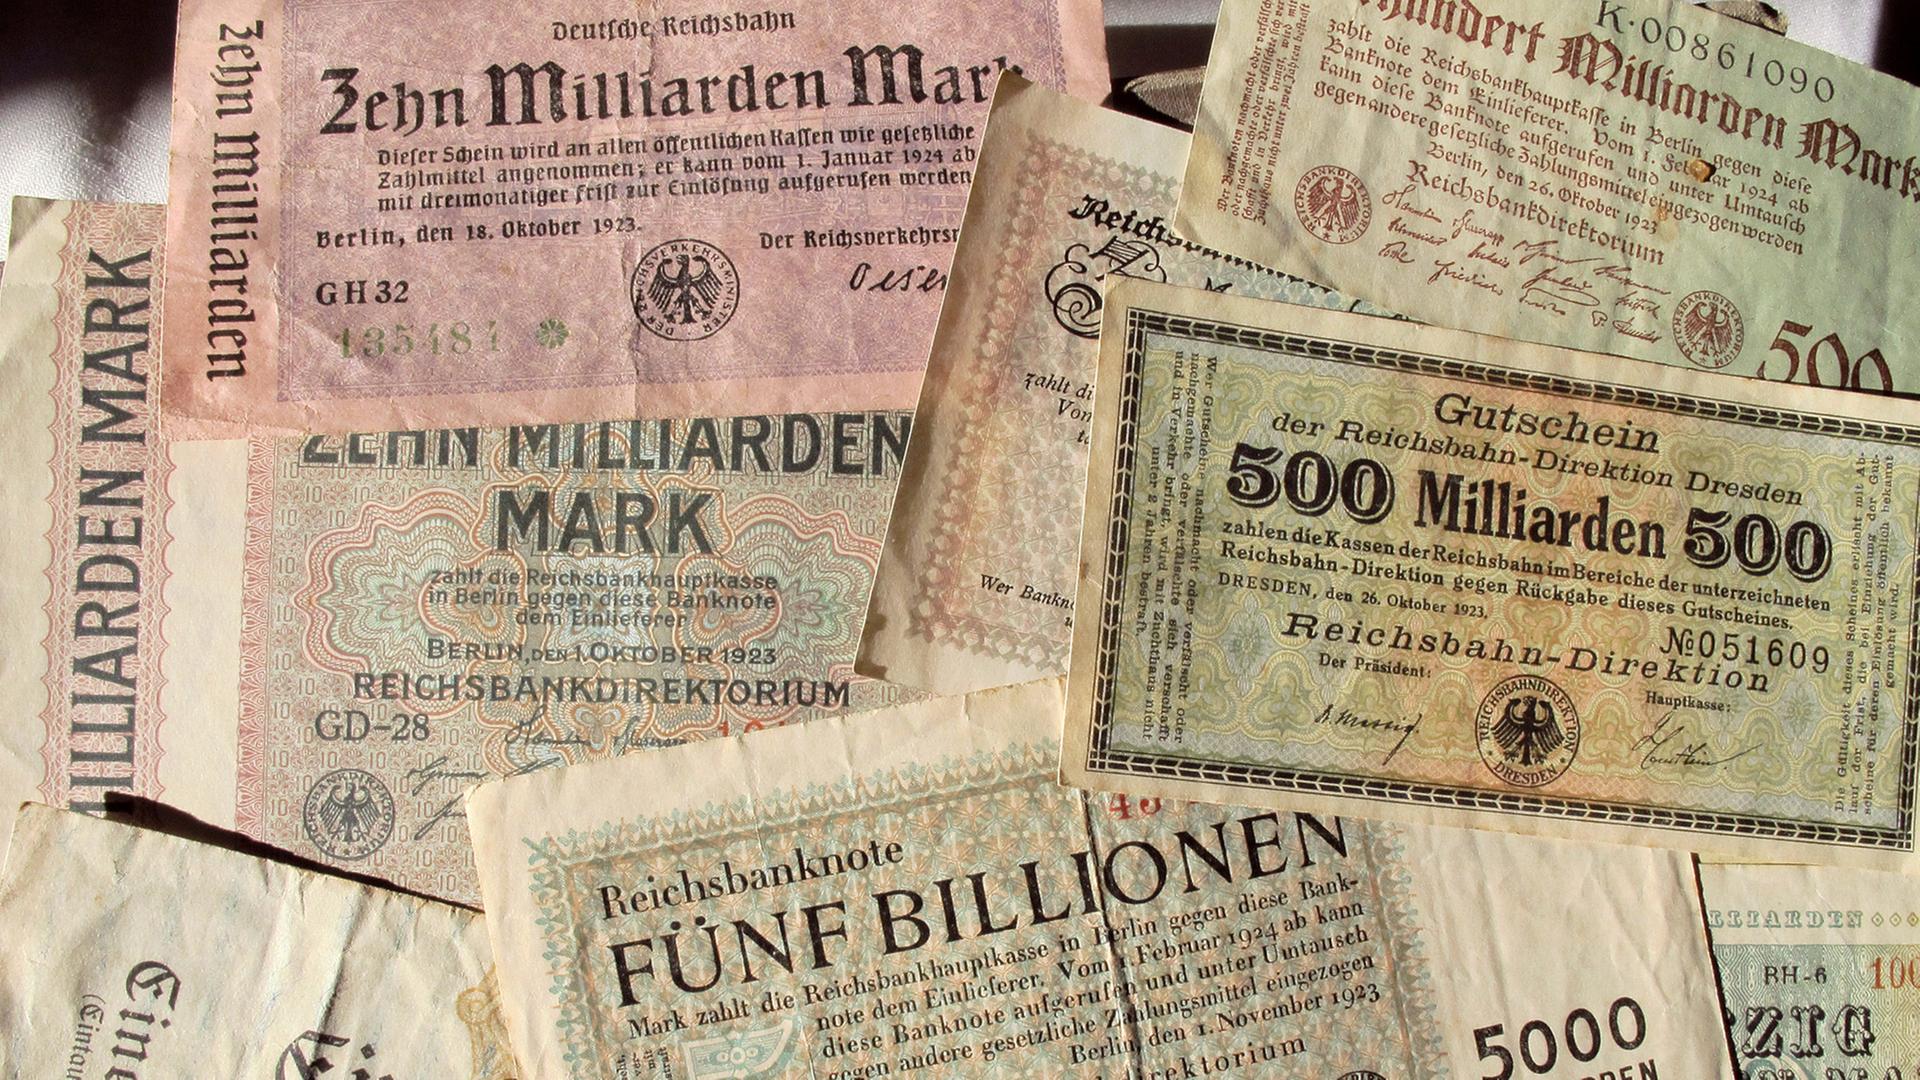 Verschiedene Geldscheine über Zehn Milliarden Mark, 500 Milliarden Mark, Fünf Billionen Mark u.a., vornehmlich 1923 von der Deutschen Reichsbank ausgegeben